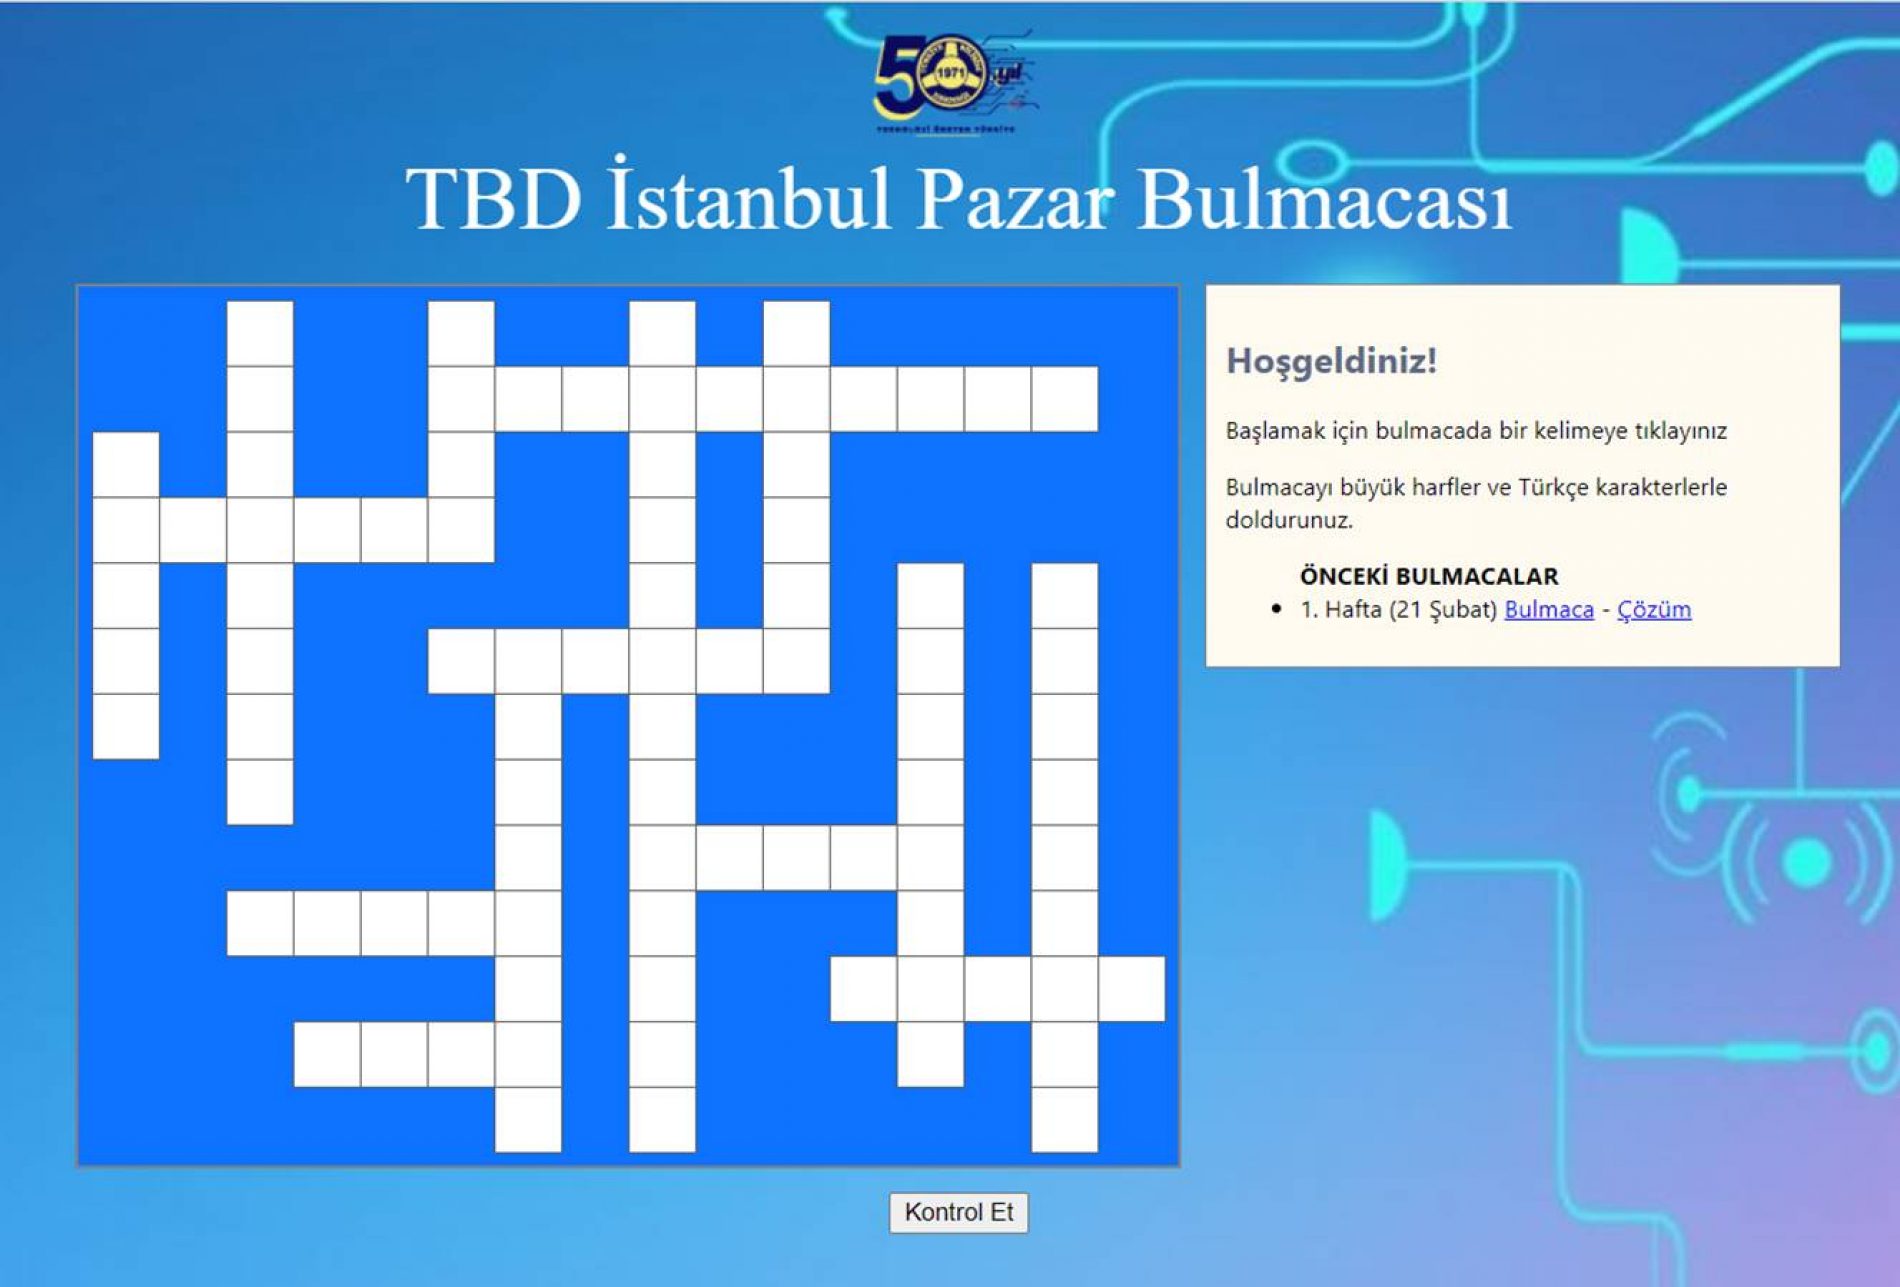 TBD İstanbul 28 Şubat Pazar Bulmacası